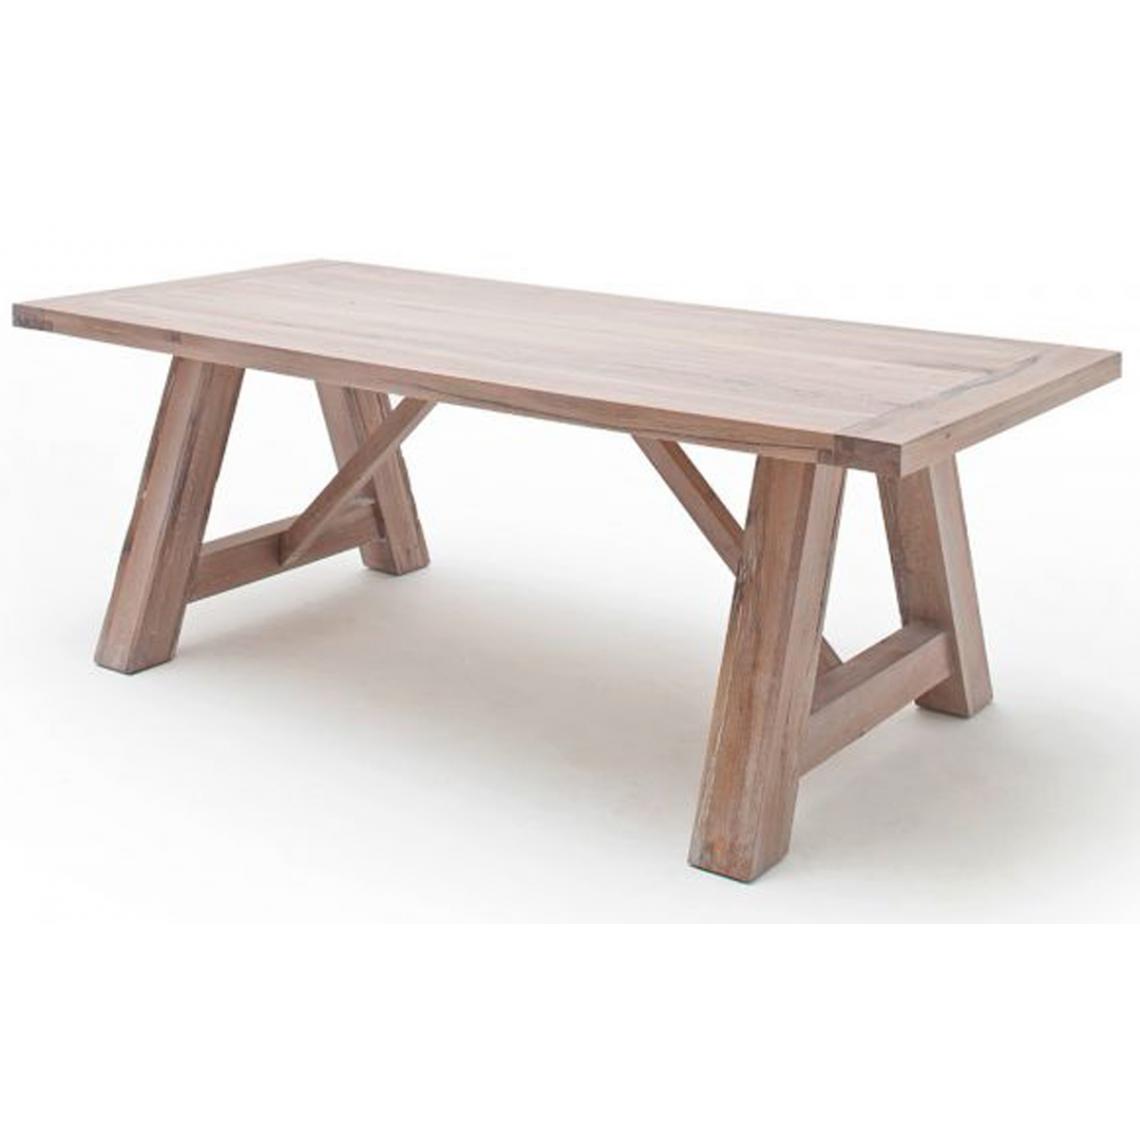 Pegane - Table à manger en chêne massif chaulé, laqué mat - L.260 x H.76 x P.100 cm -PEGANE- - Tables à manger